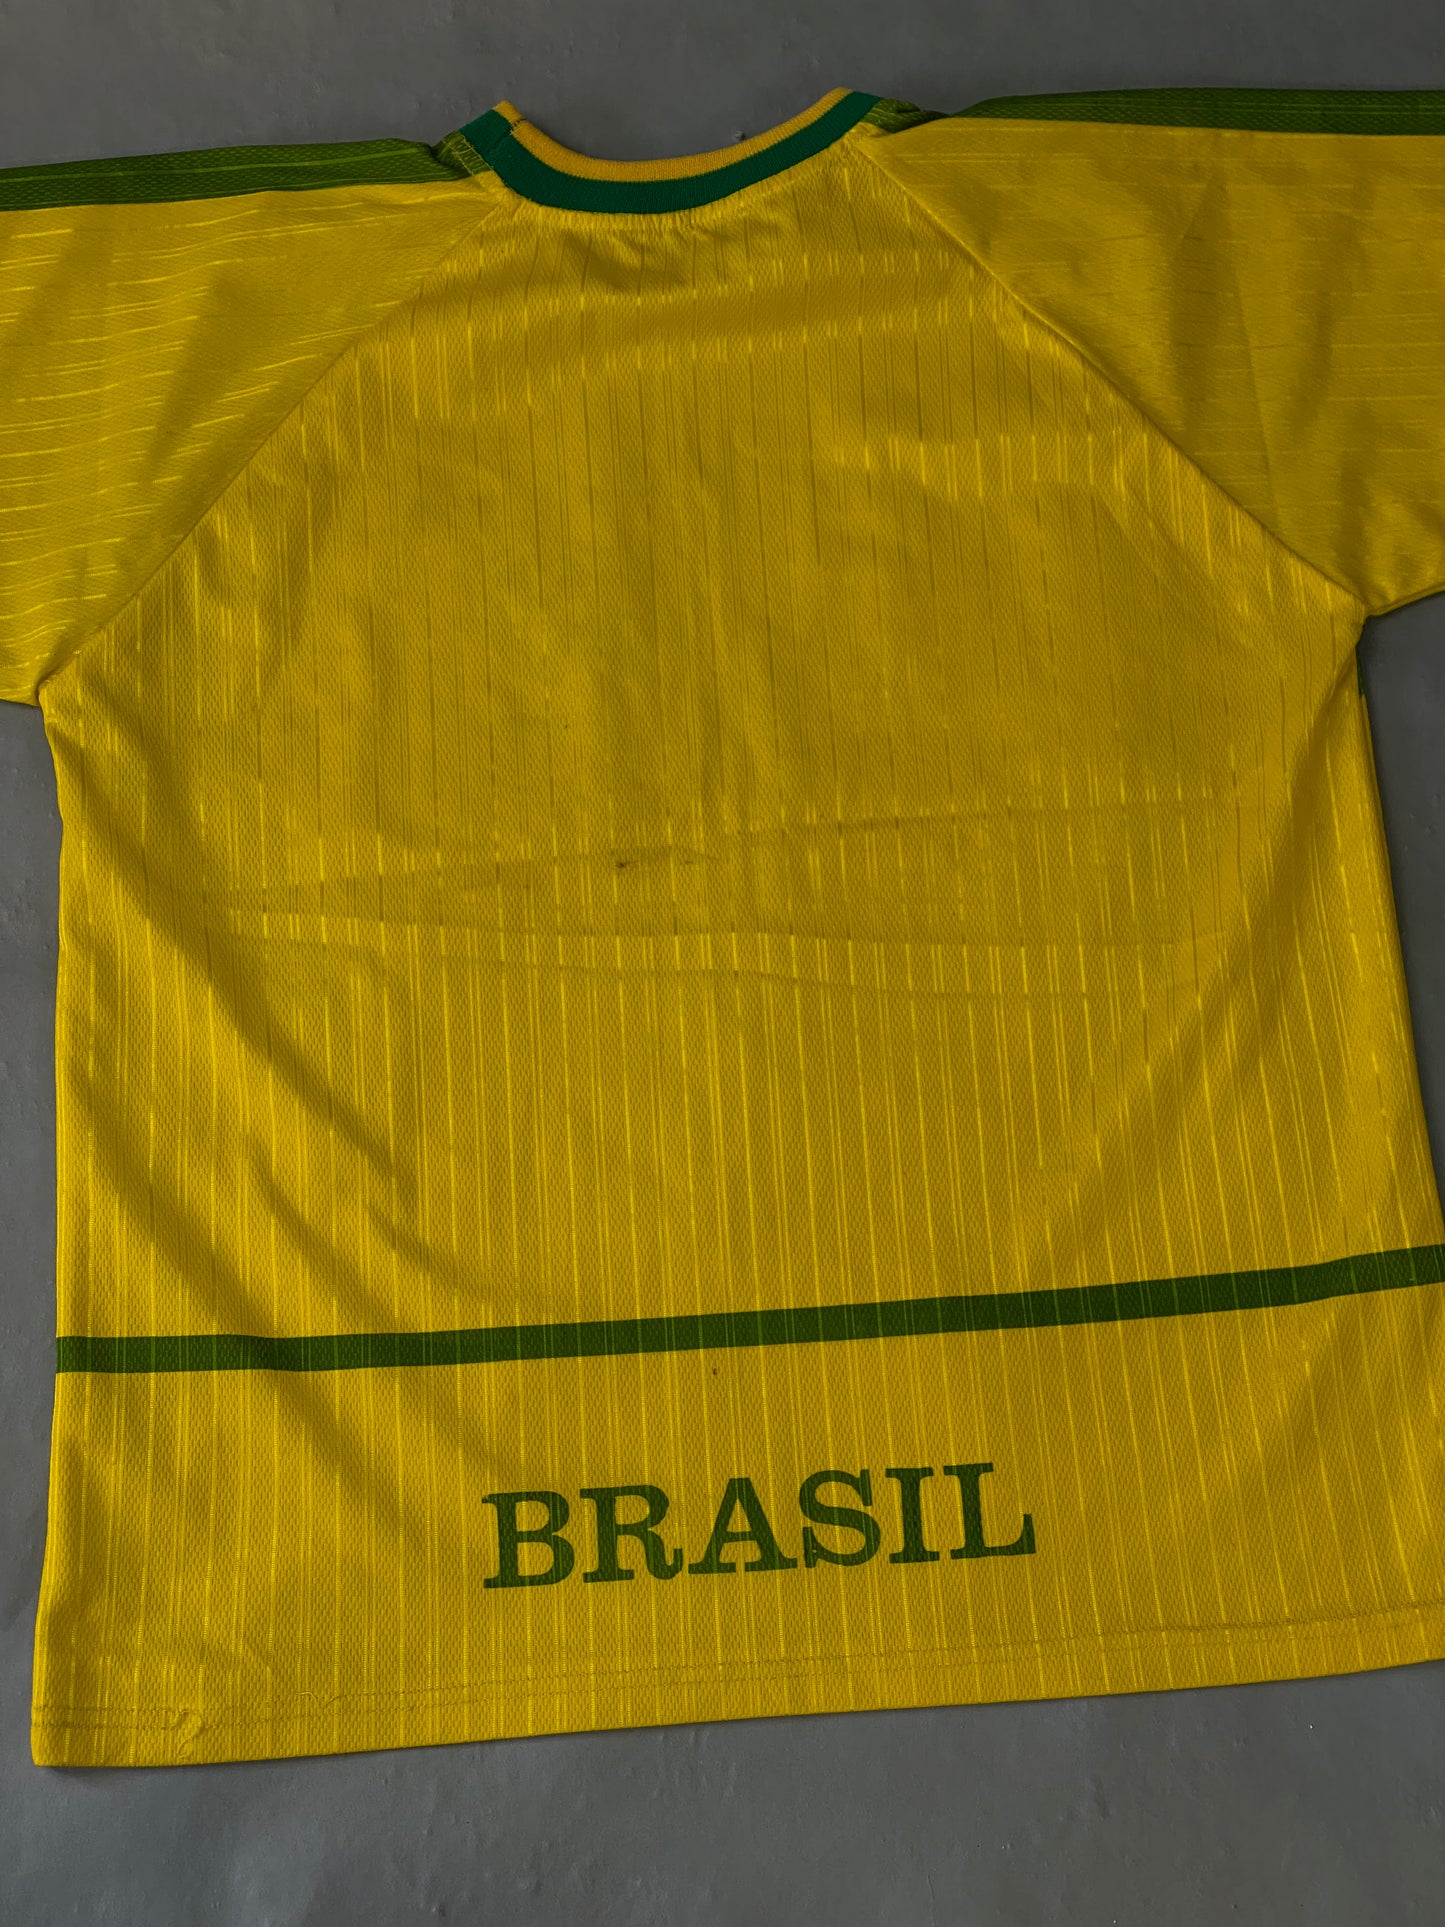 Jersey Brasil Vintage